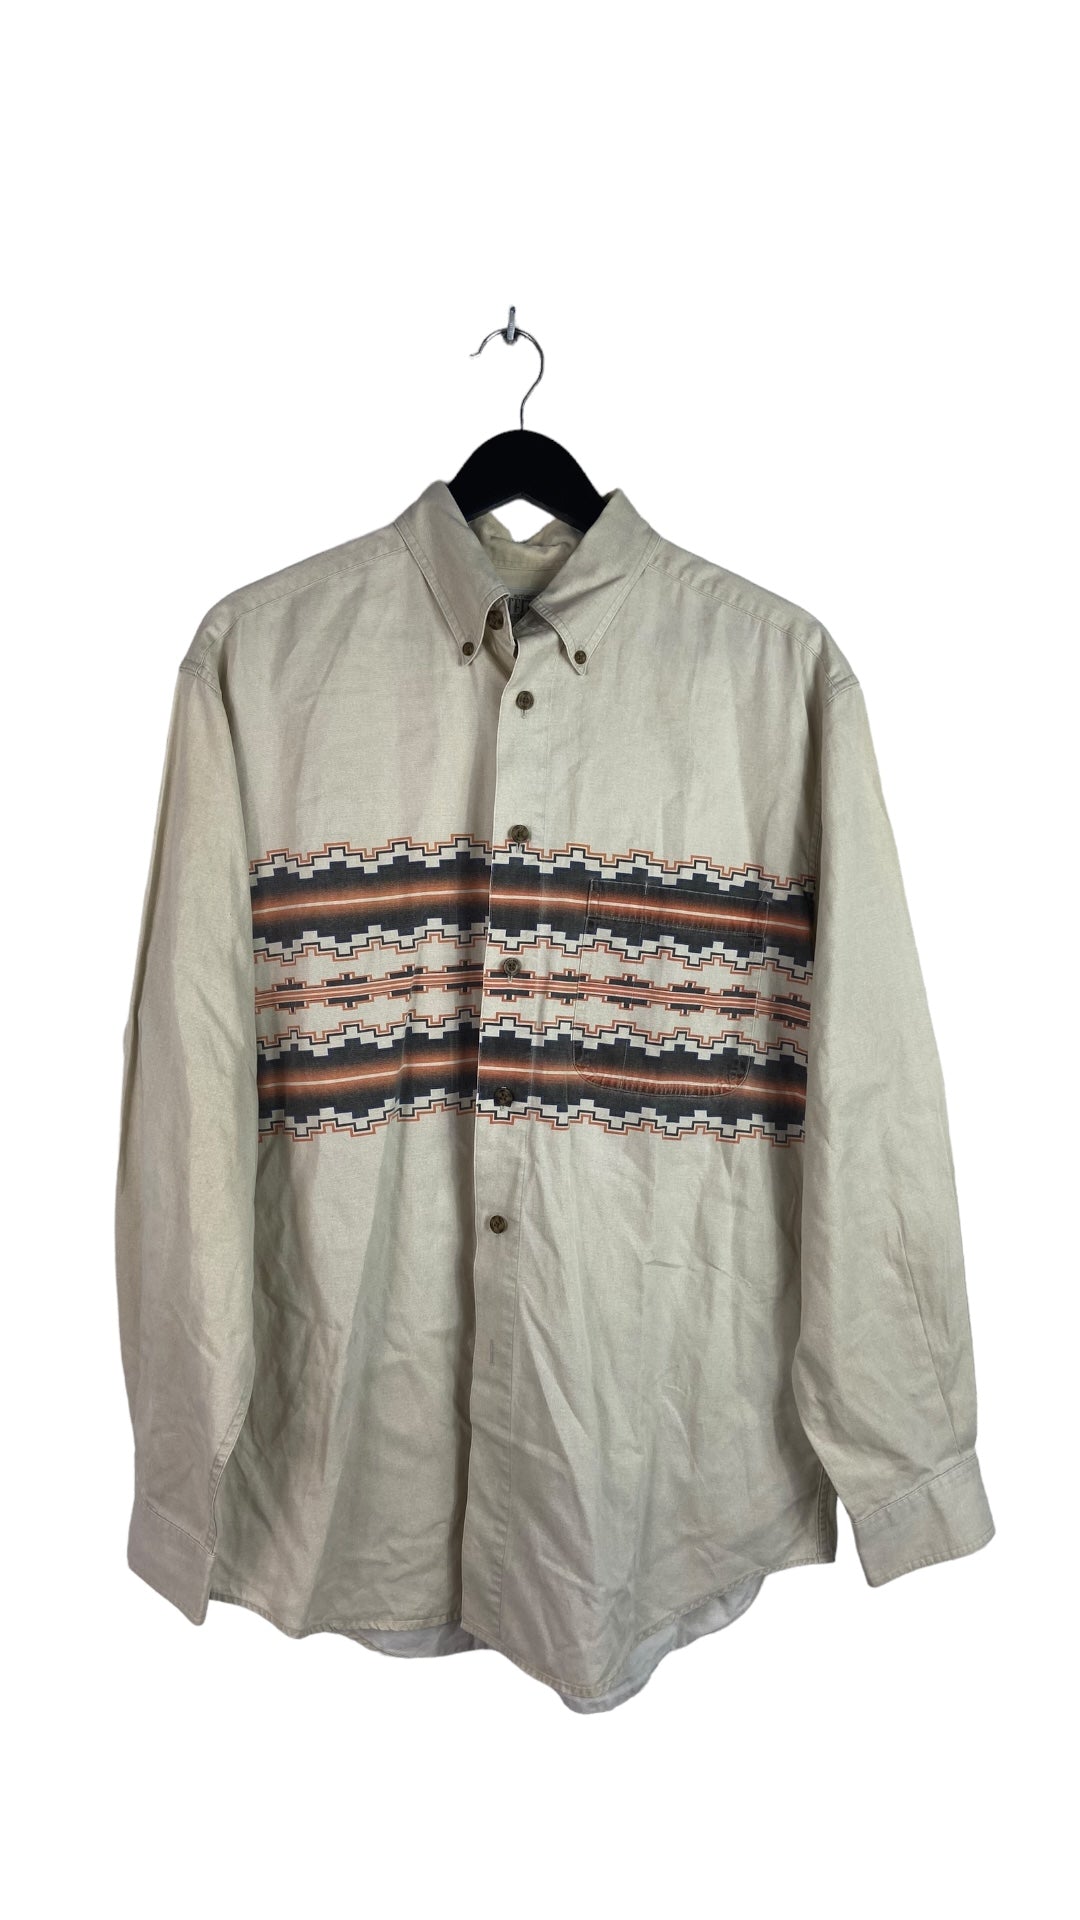 VTG Western Tan Aztec L/S Button Up Shirt Sz L